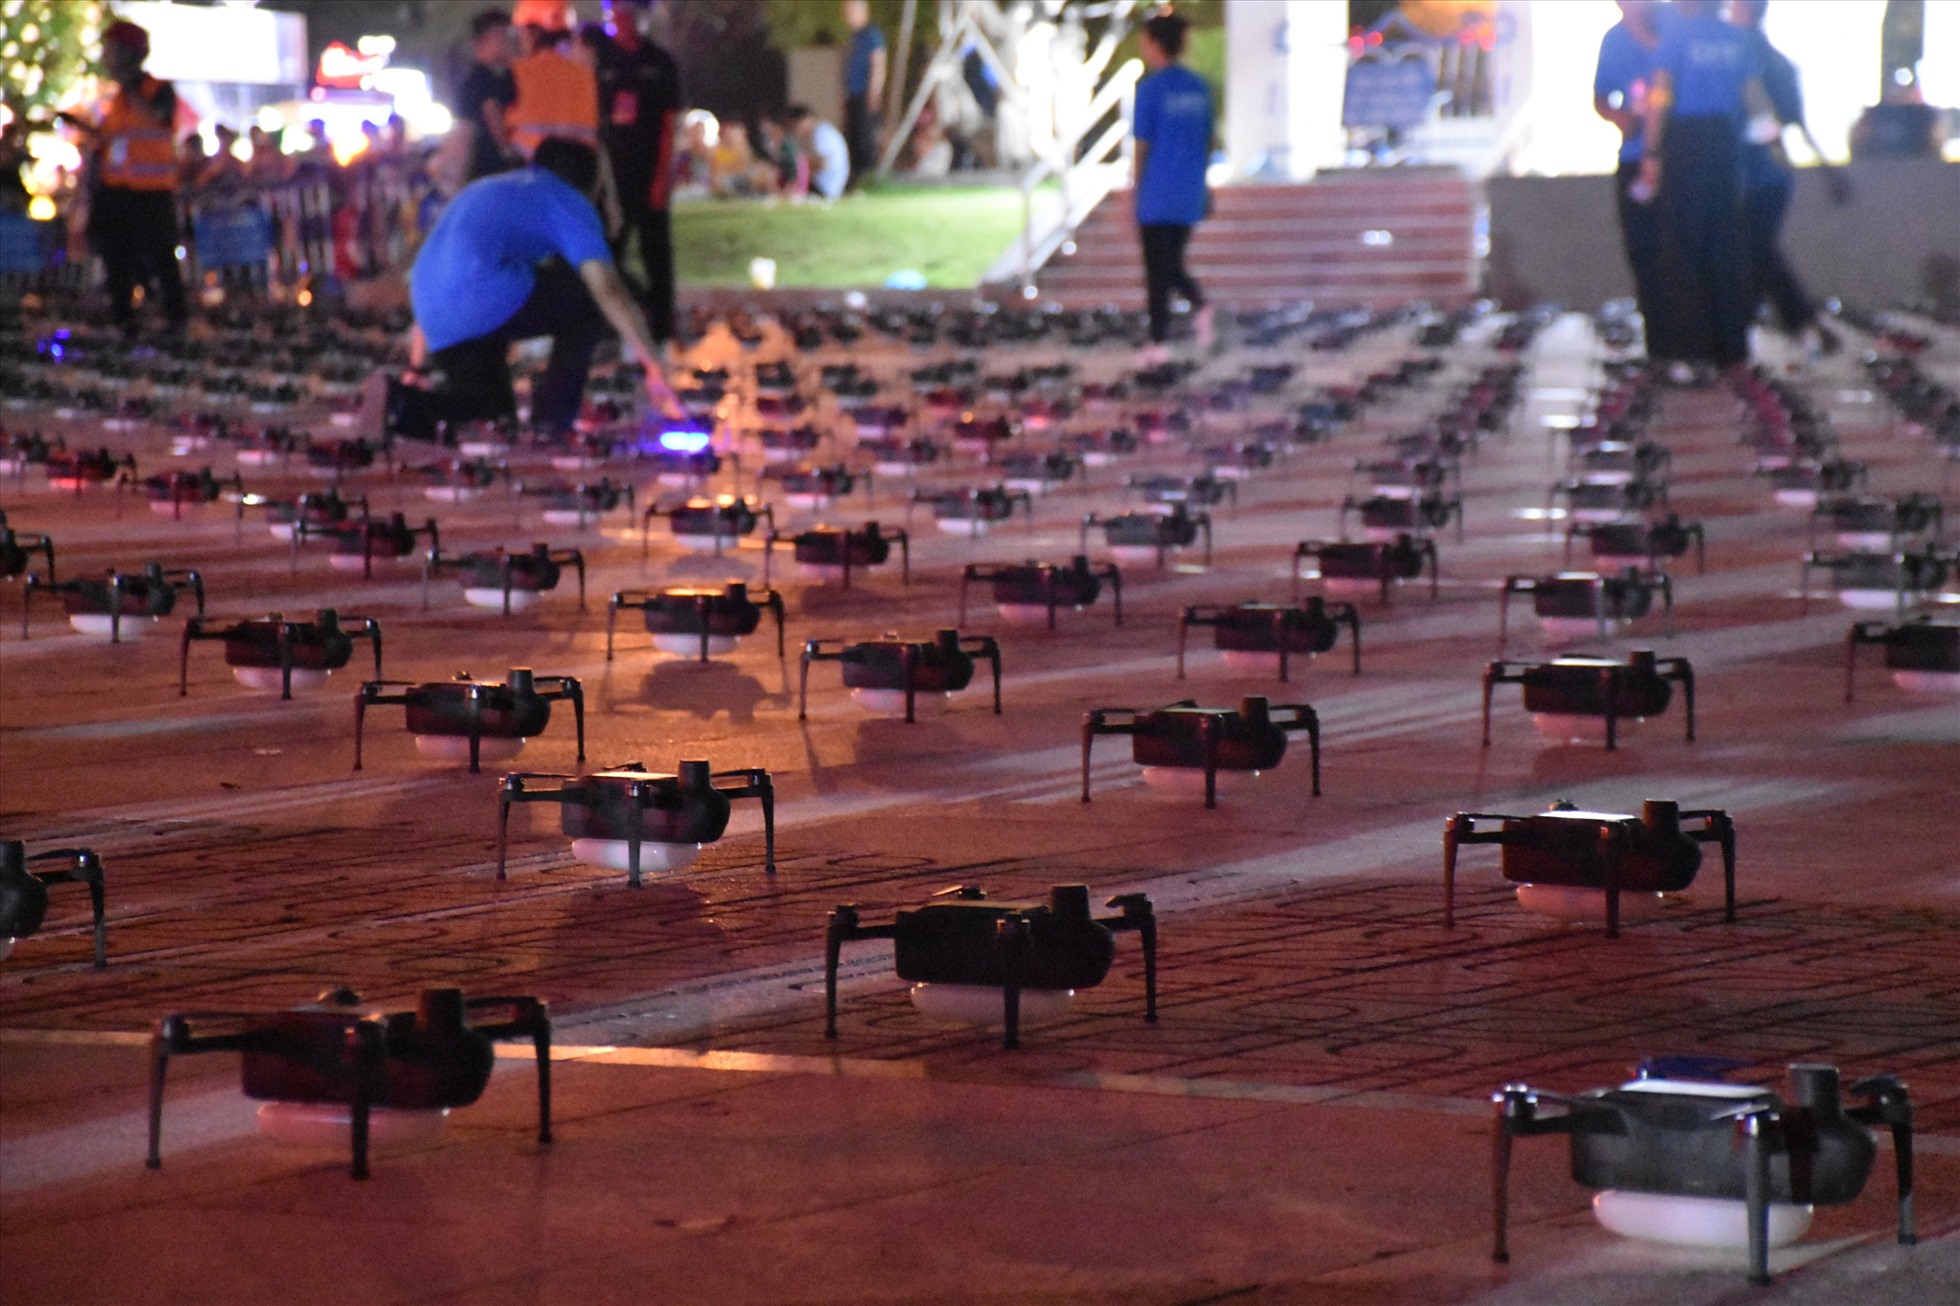 Các drone light được sắp xếp để tạo thành các hình dạng với các hiệu ứng ánh sáng rực rỡ. Ảnh: Hữu Long